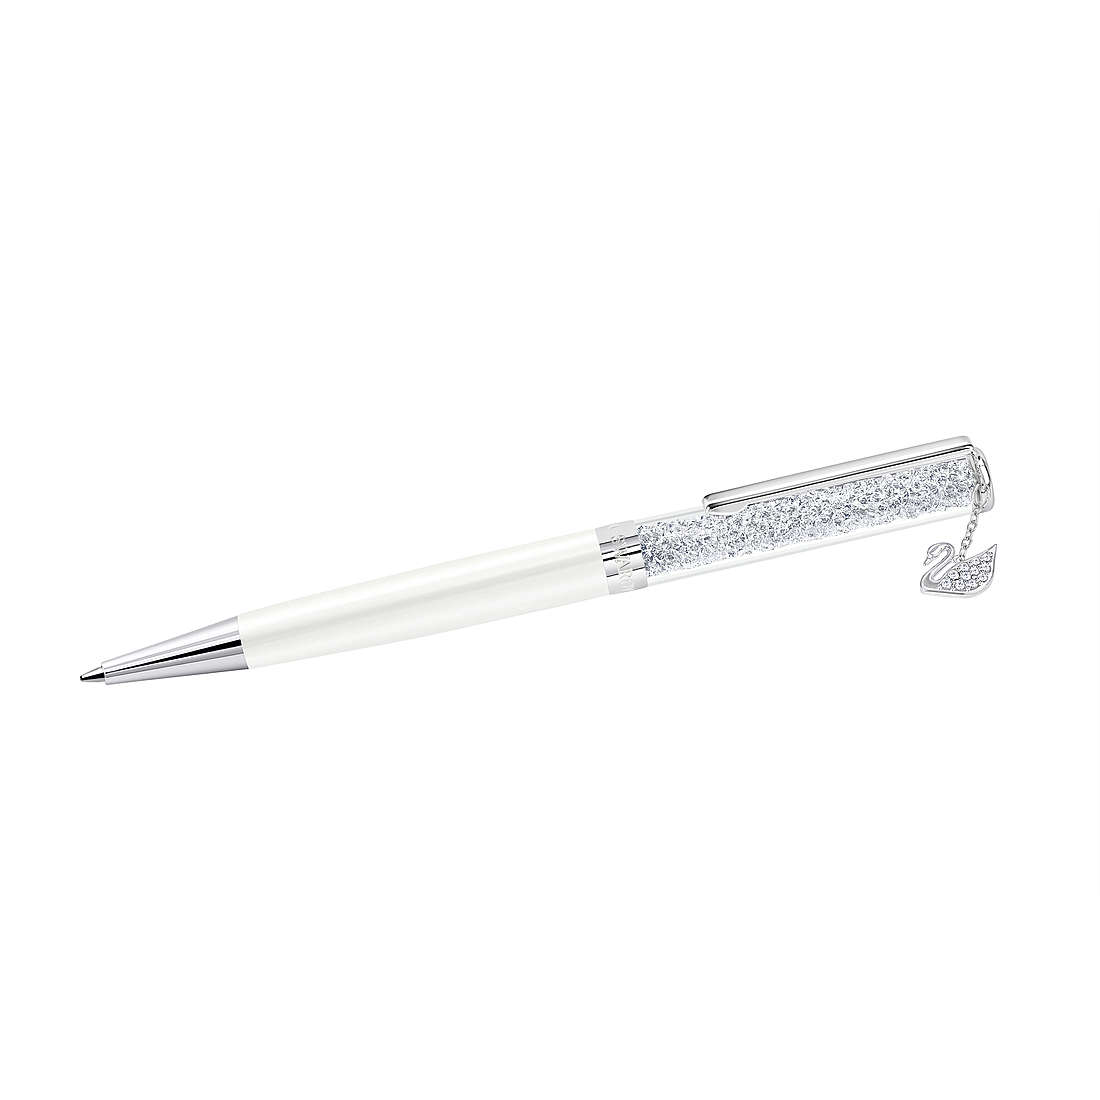 Stift Kugelschreiber Swarovski Crystalline da frau 5408273